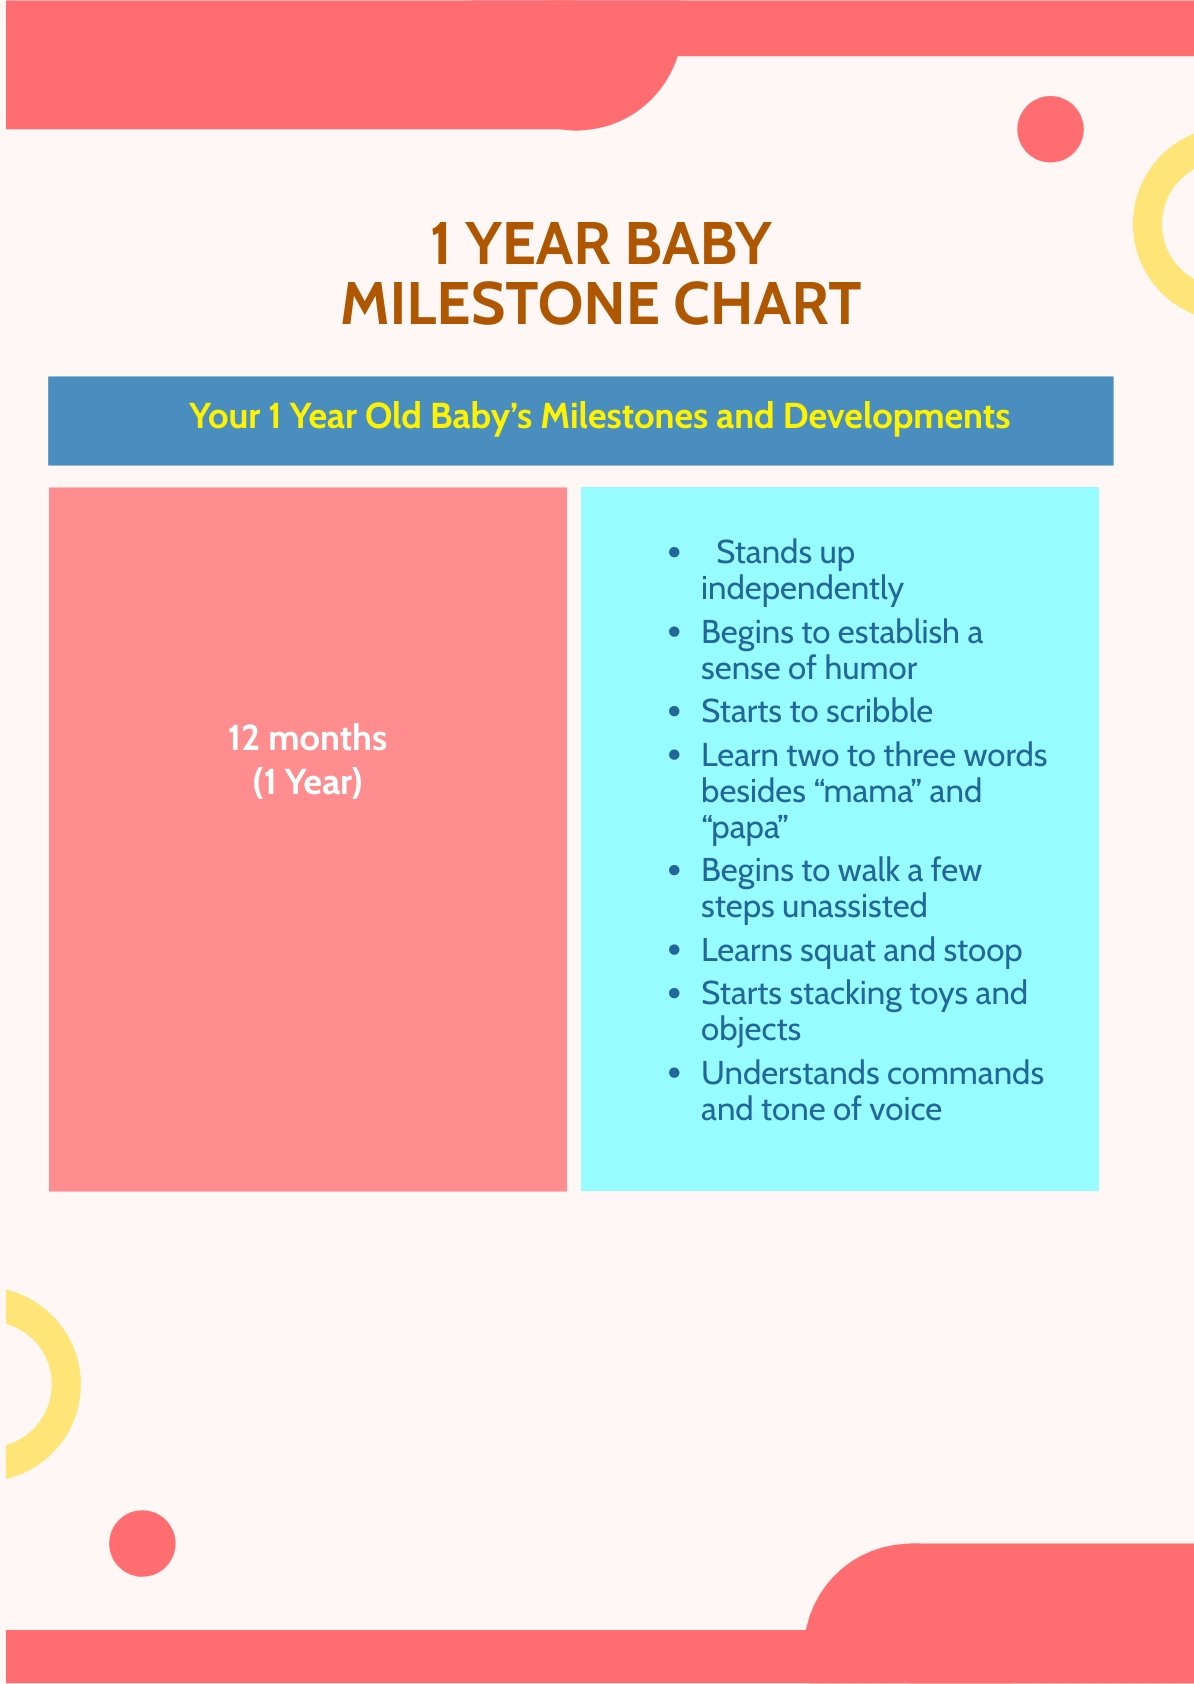 1 Year Baby Milestone Chart